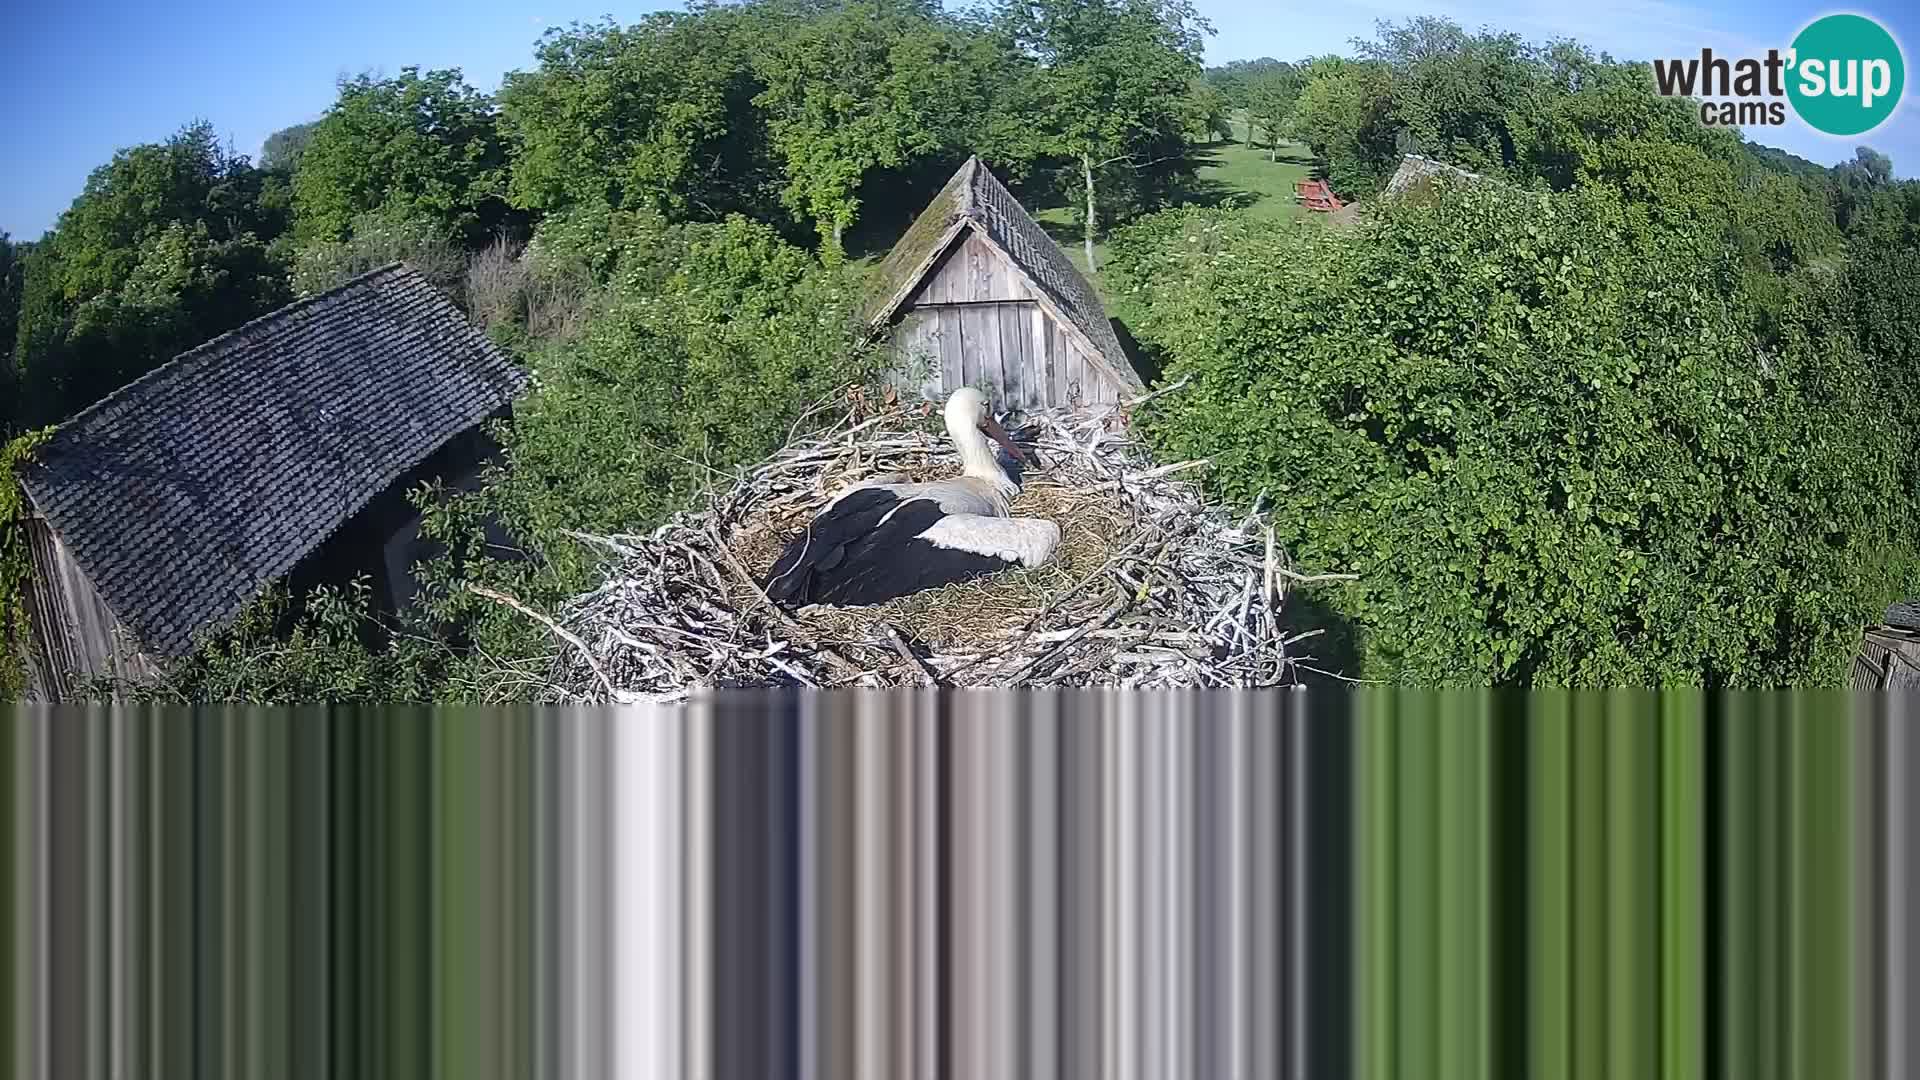 Villaggio delle cicogne europee webcam Parco naturale di Lonjsko polje